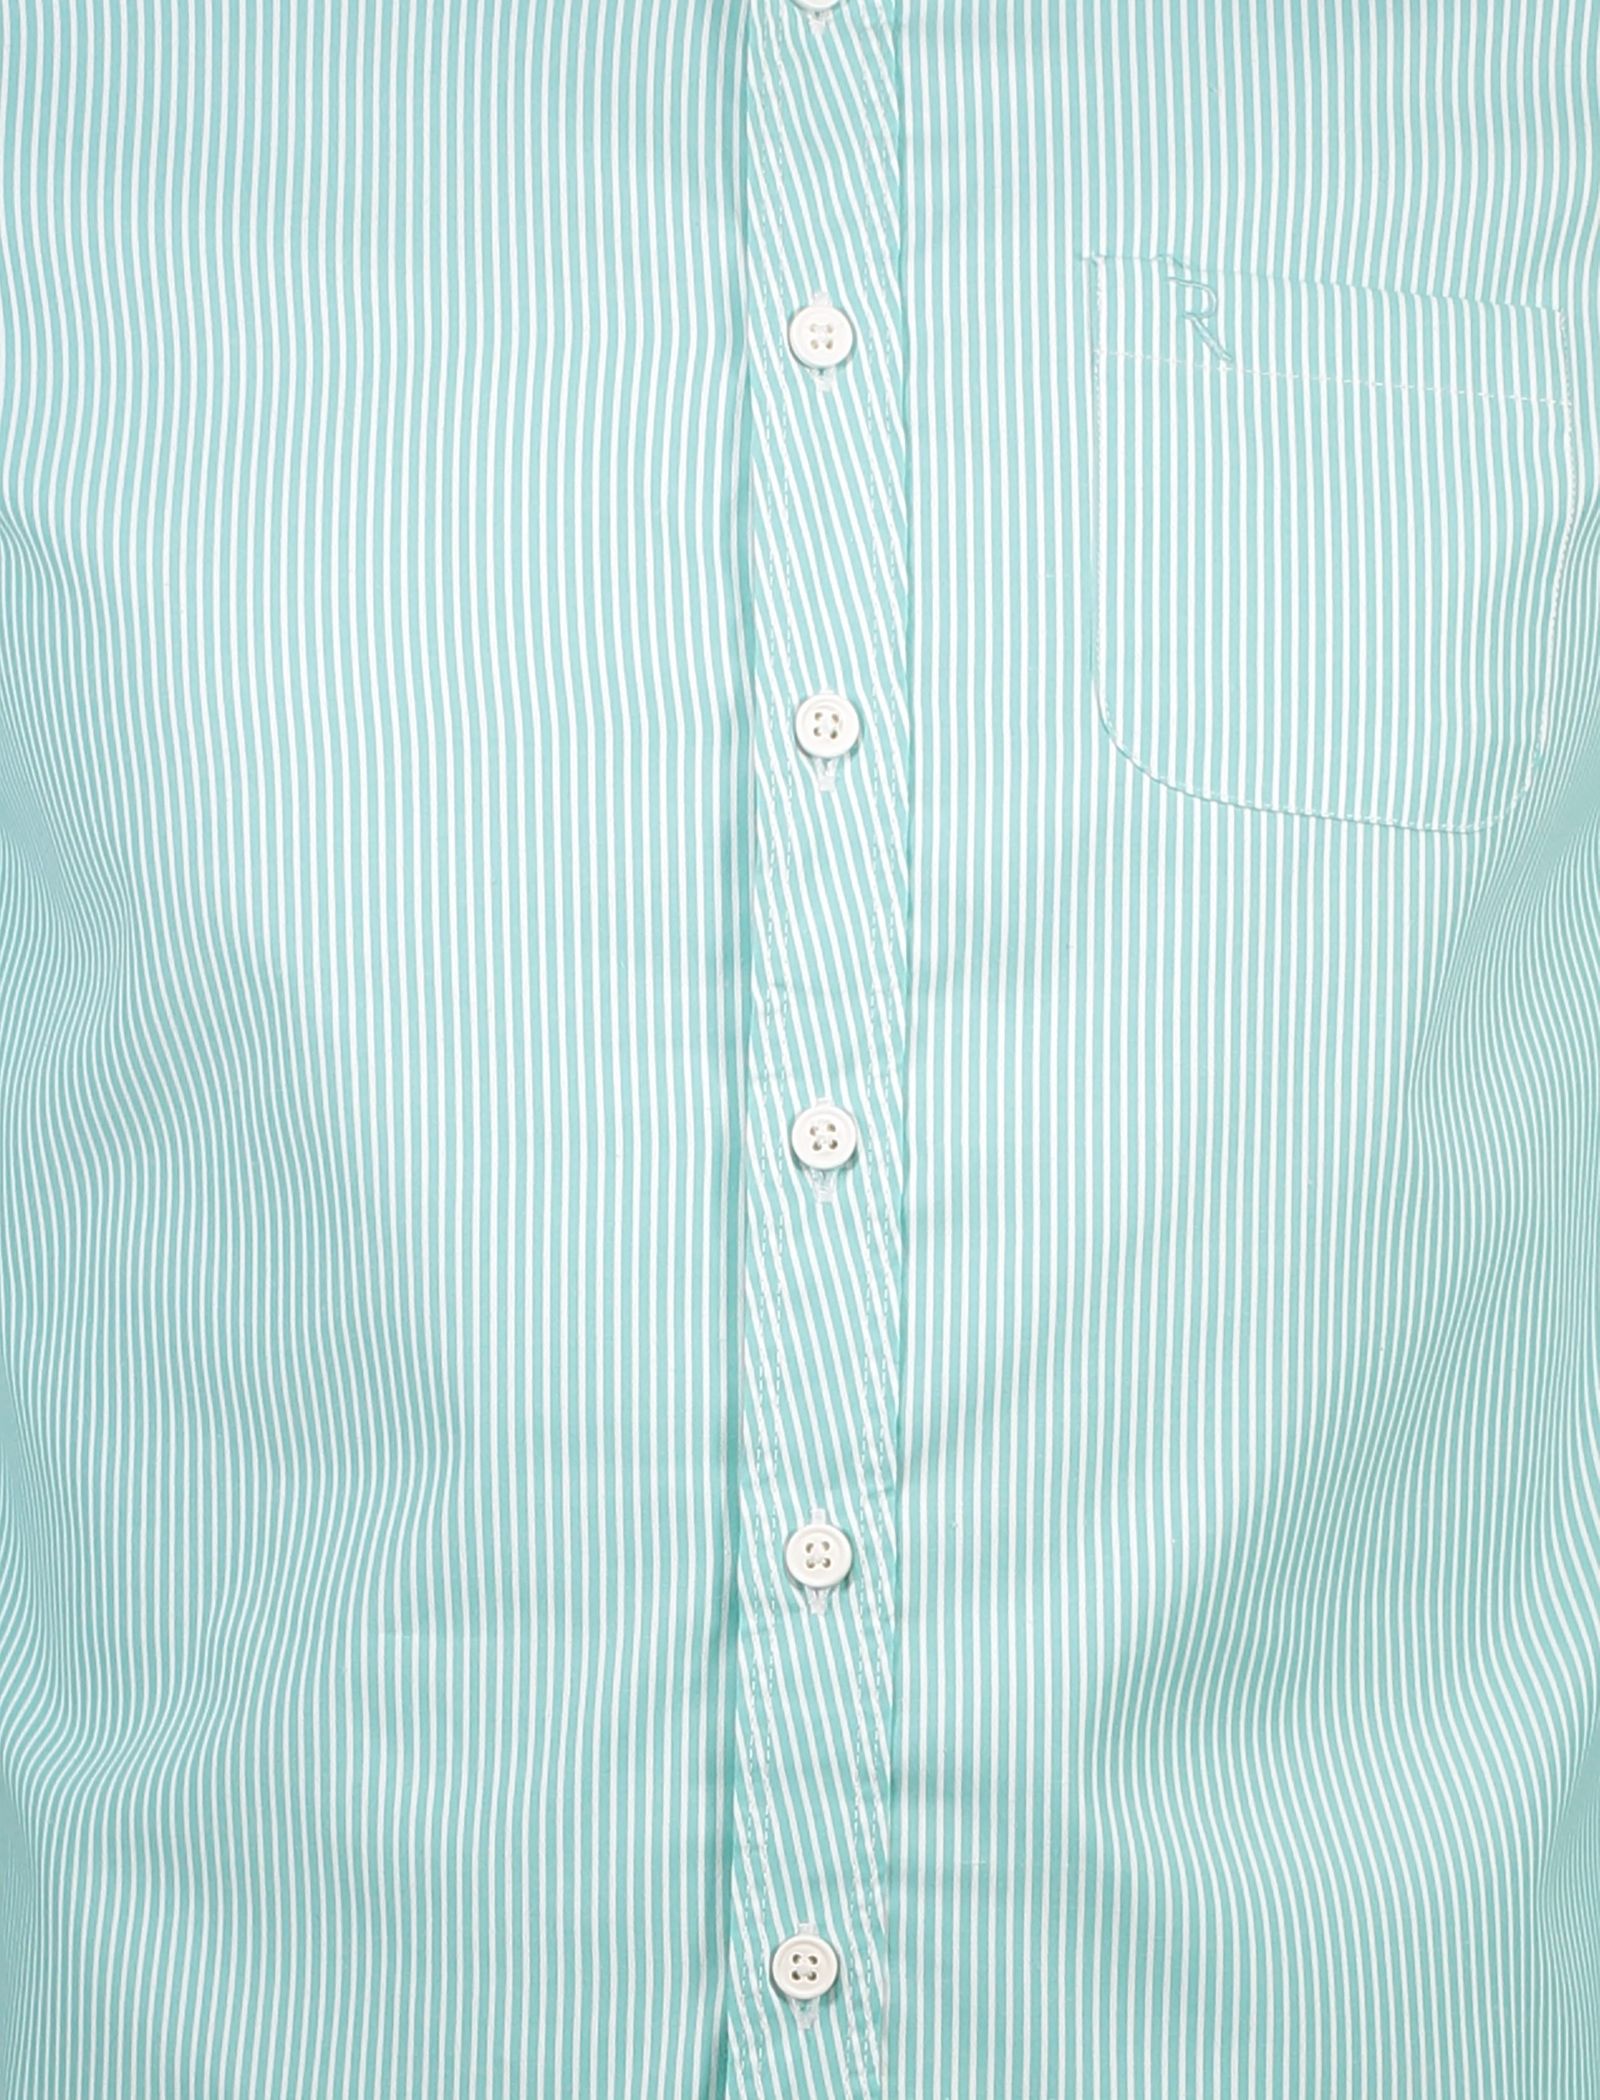 پیراهن نخی آستین بلند مردانه - رونی - سبزآبي - 5